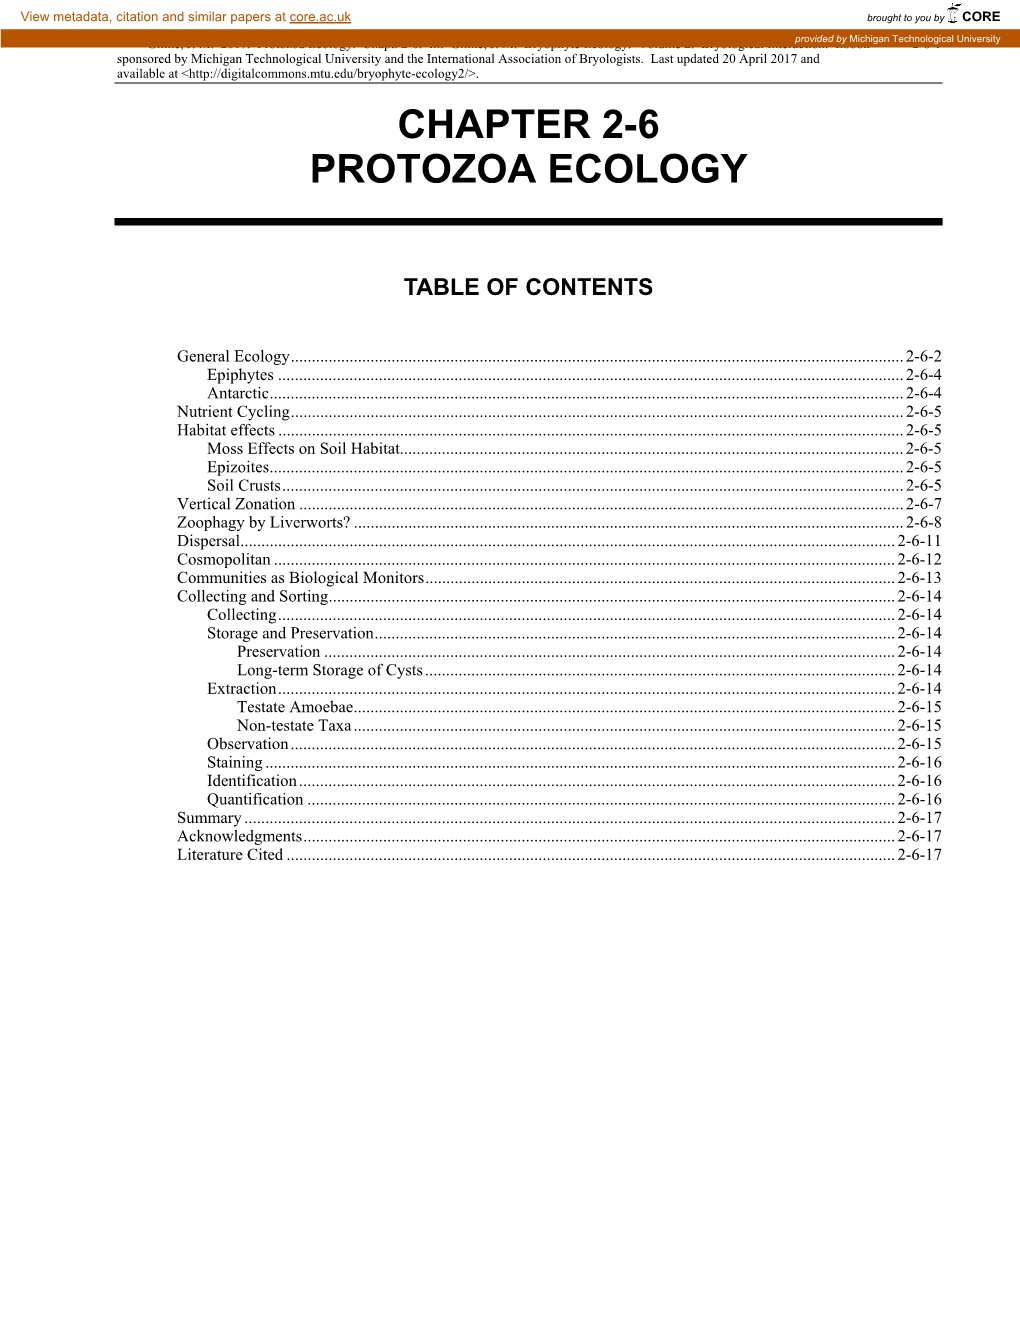 Volume 2, Chapter 2-6 Protozoa Ecology